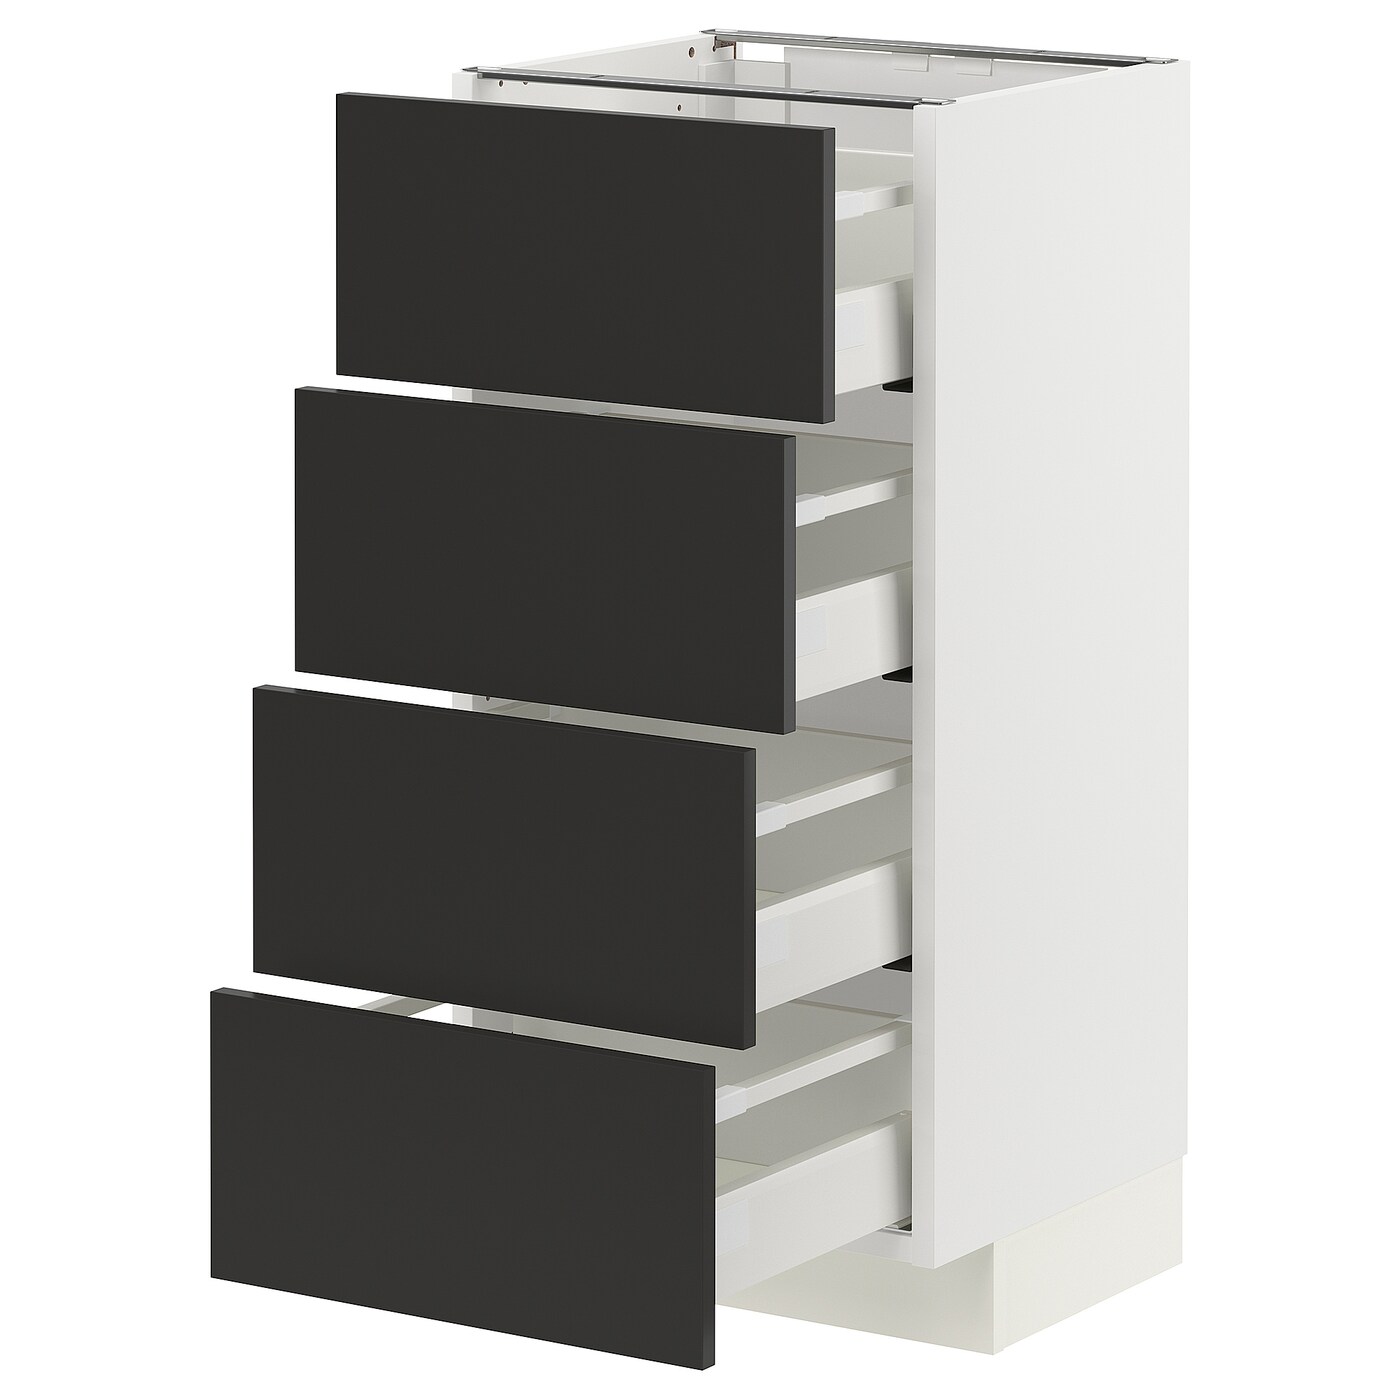 Напольный шкаф  - IKEA METOD MAXIMERA, 88x39,2x40см, белый/черный, МЕТОД МАКСИМЕРА ИКЕА